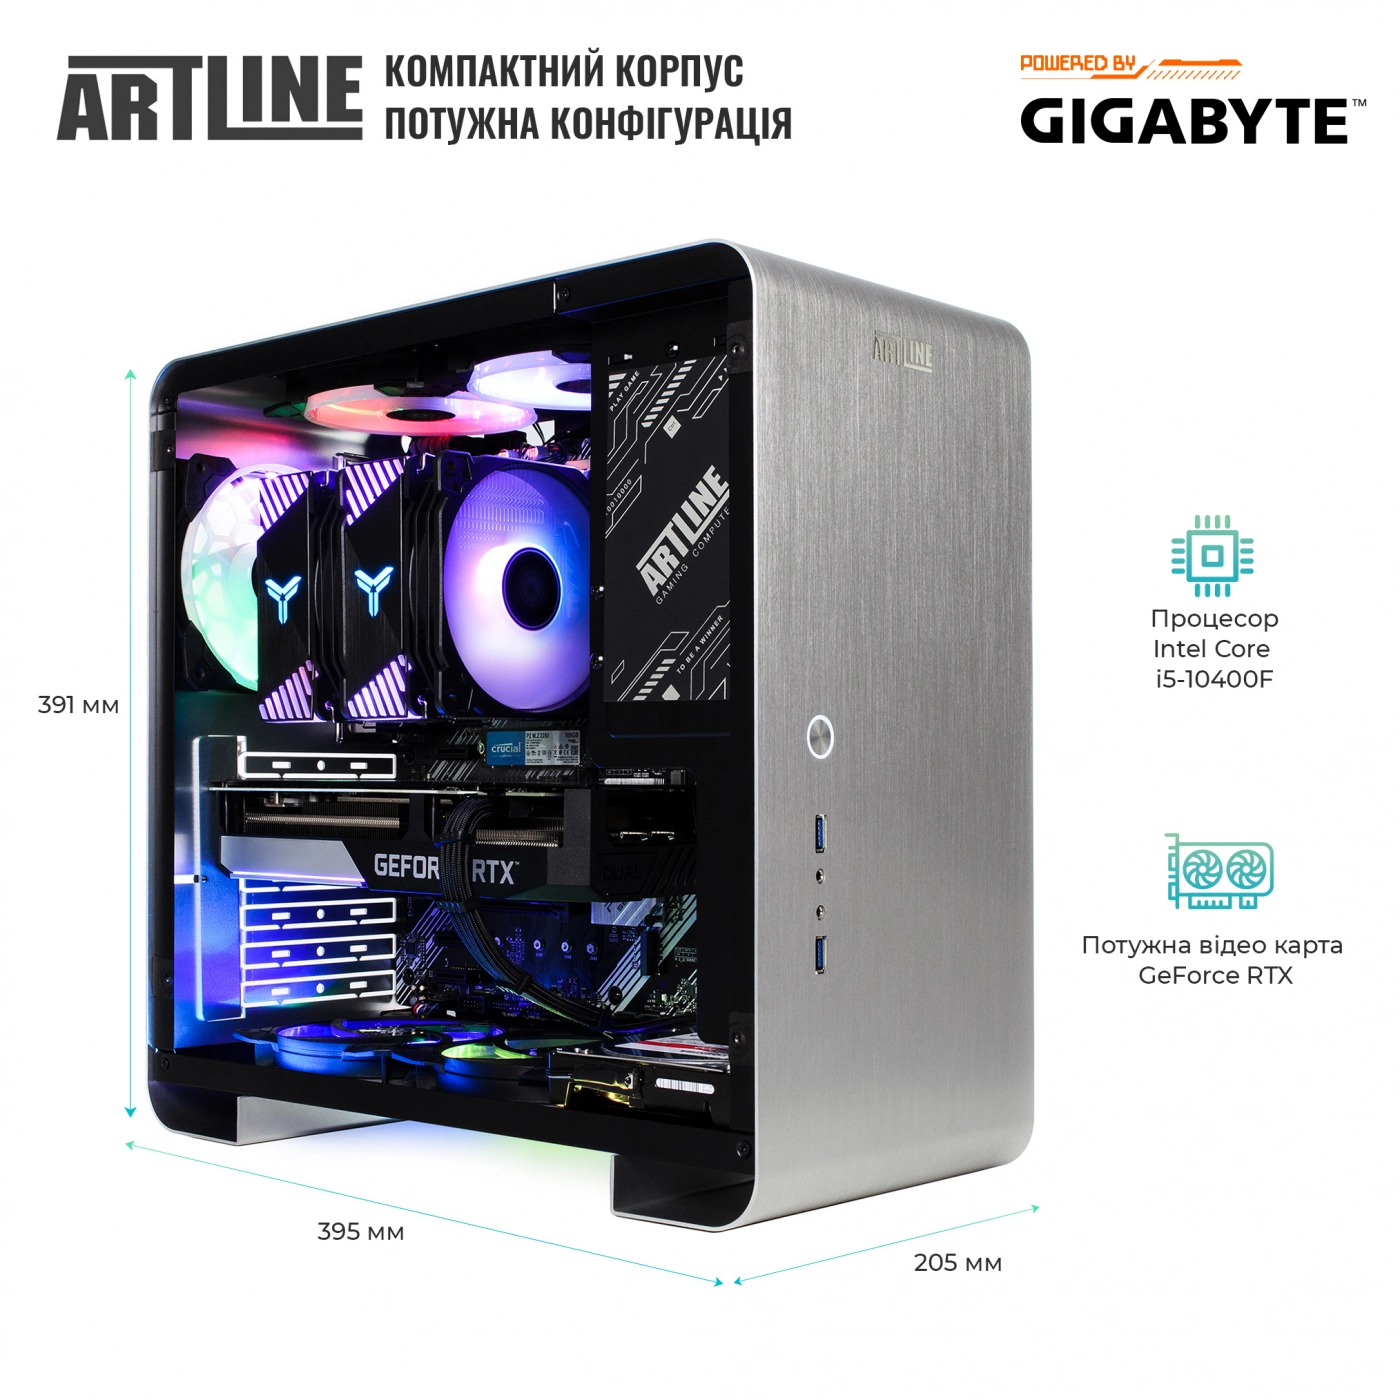 Купить Компьютер ARTLINE Gaming X55v34 - фото 6